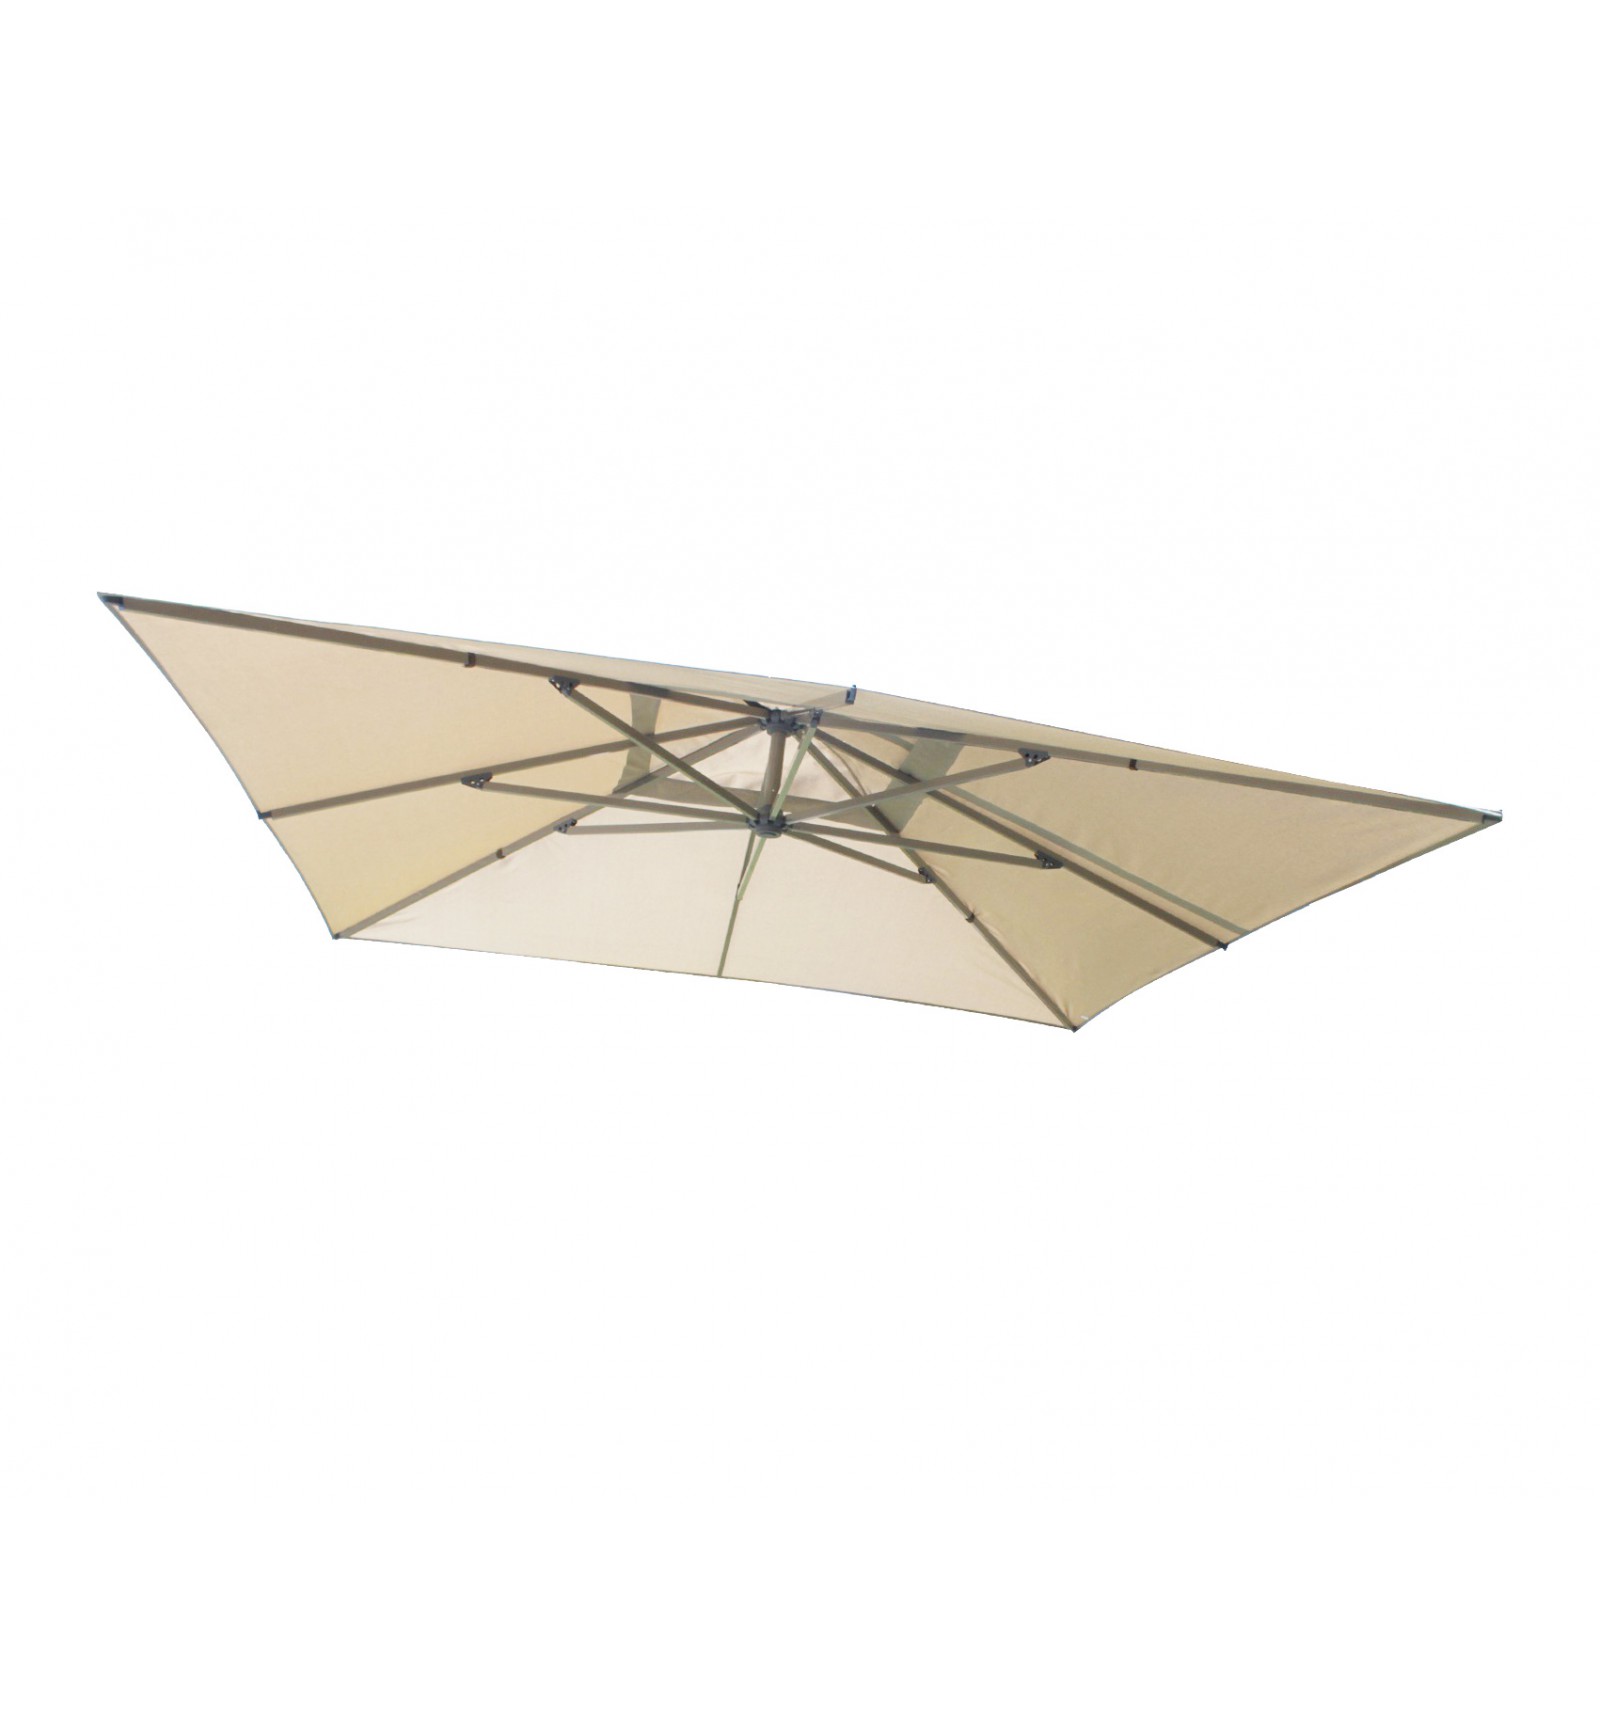 Licht taupe Olefin voor Sun parasol 320 cm